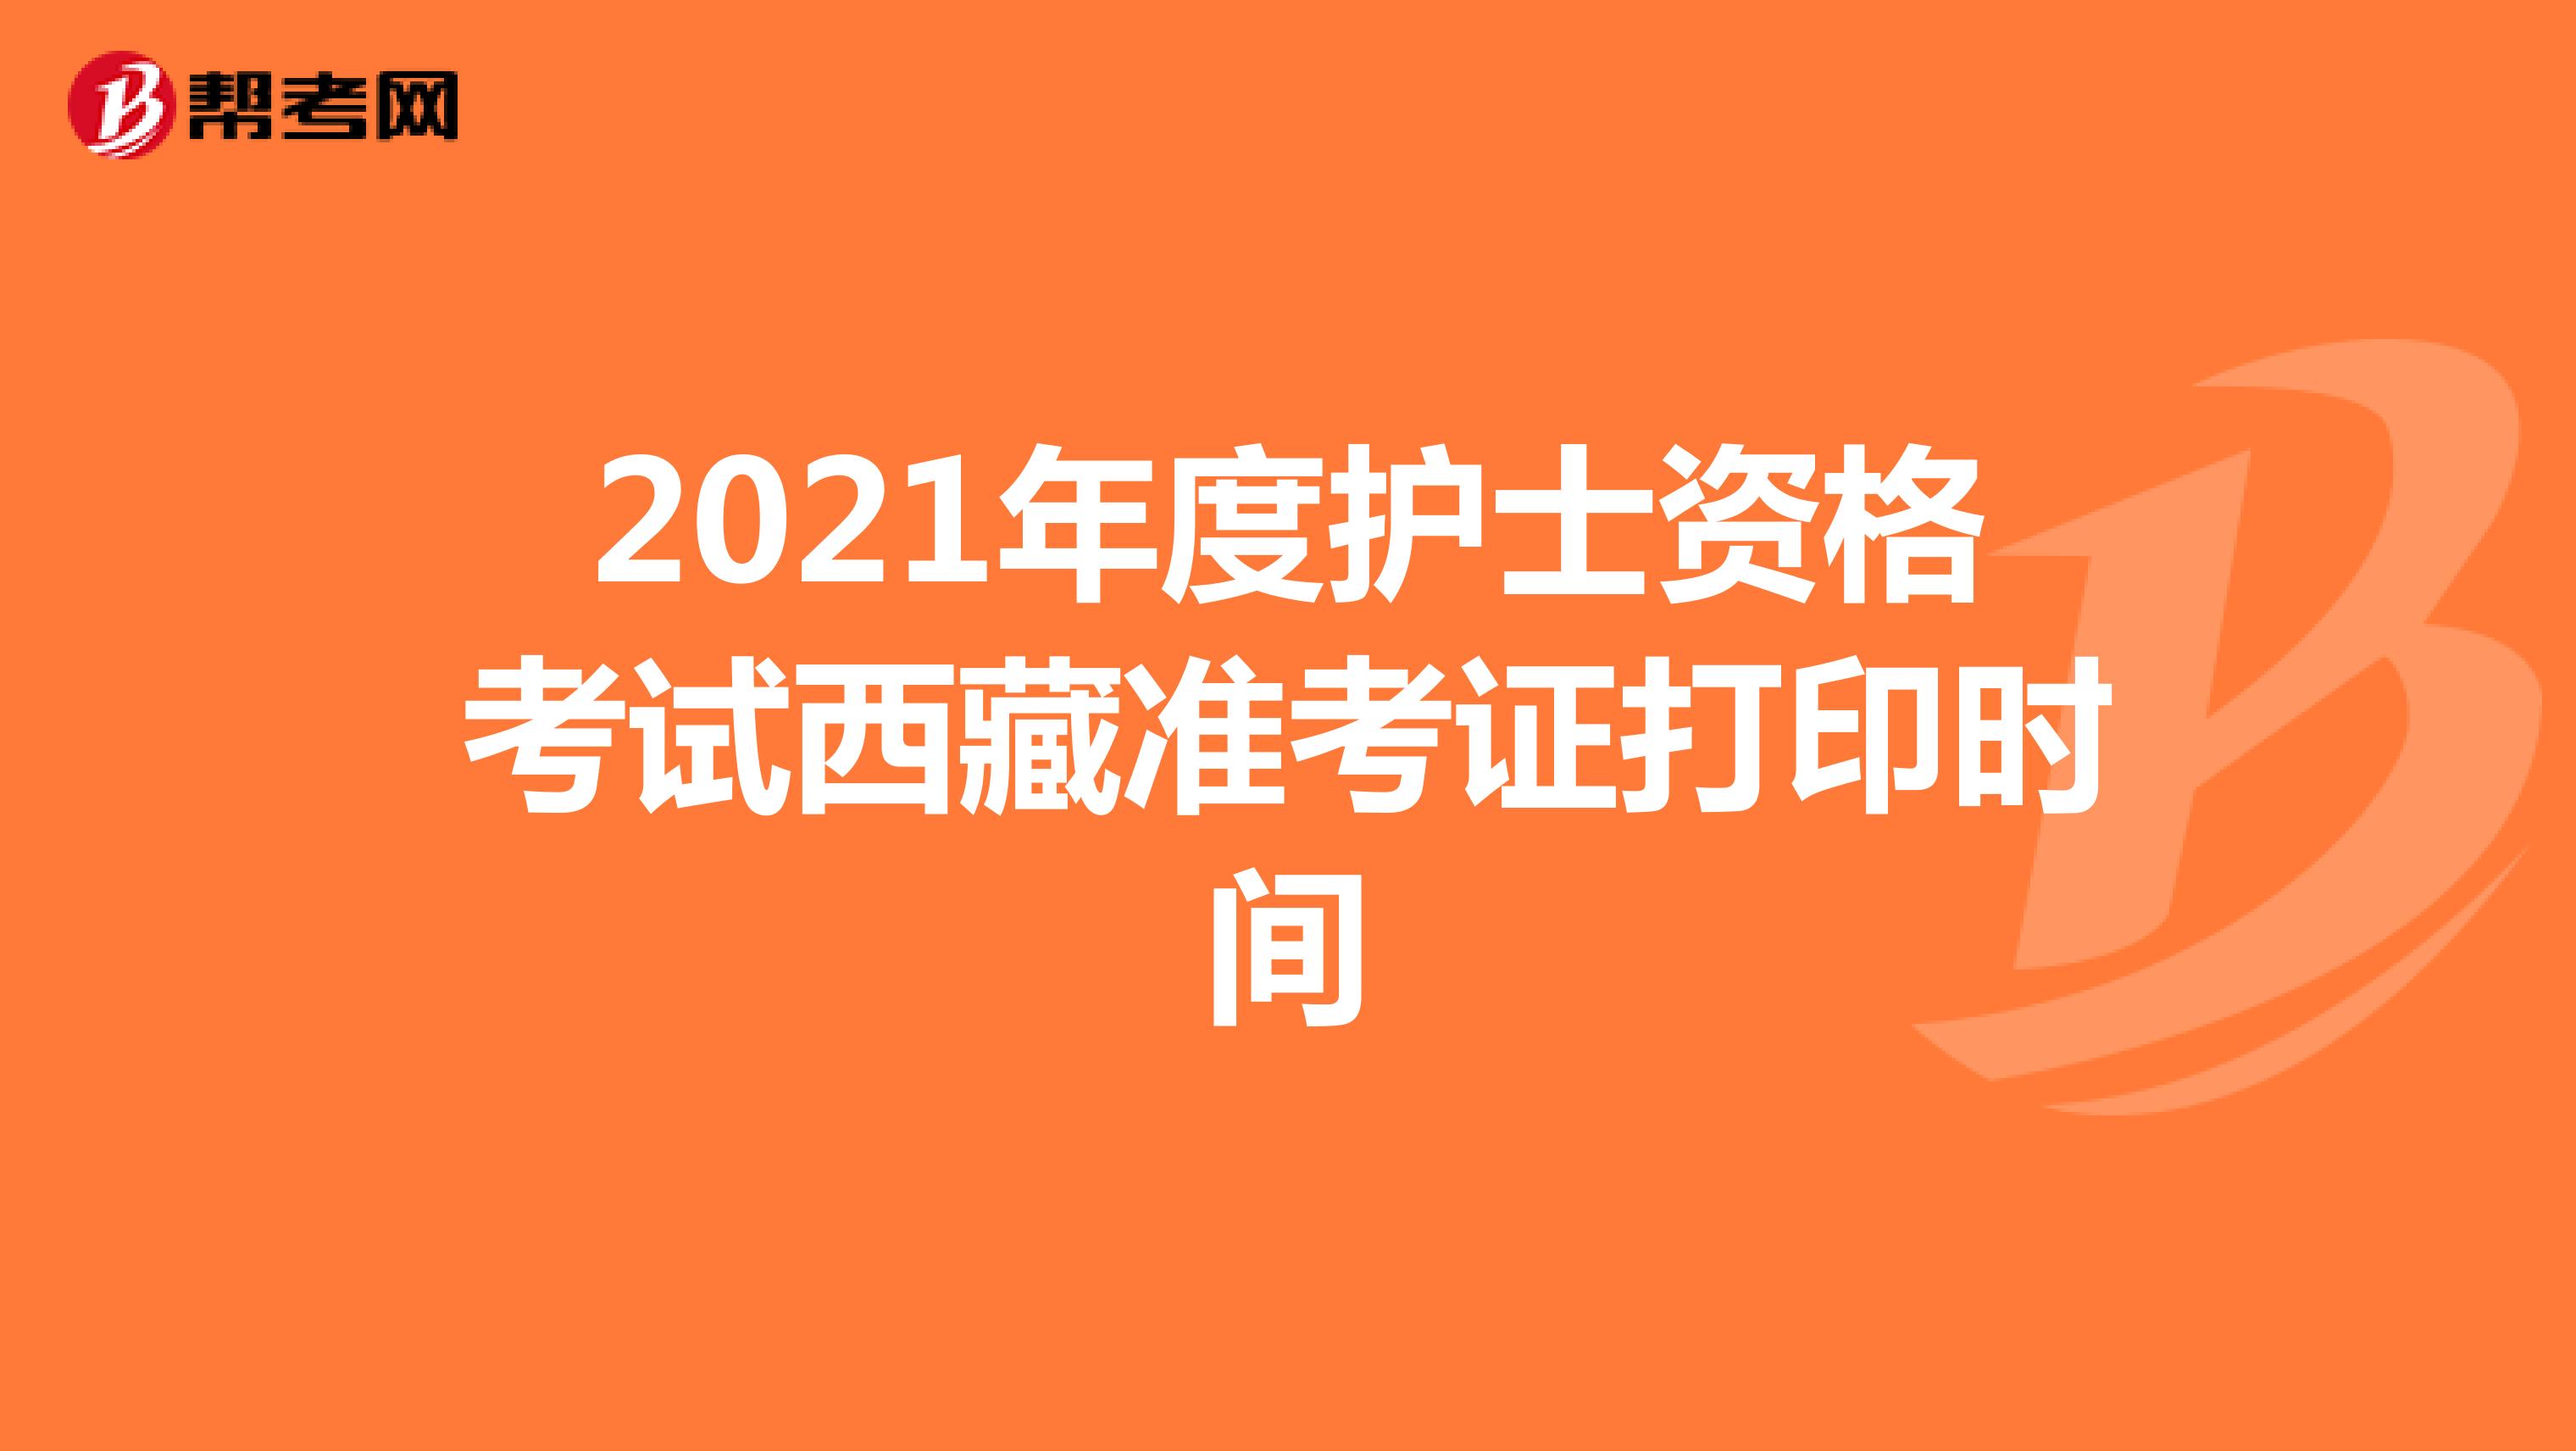 2021年度护士资格考试西藏准考证打印时间